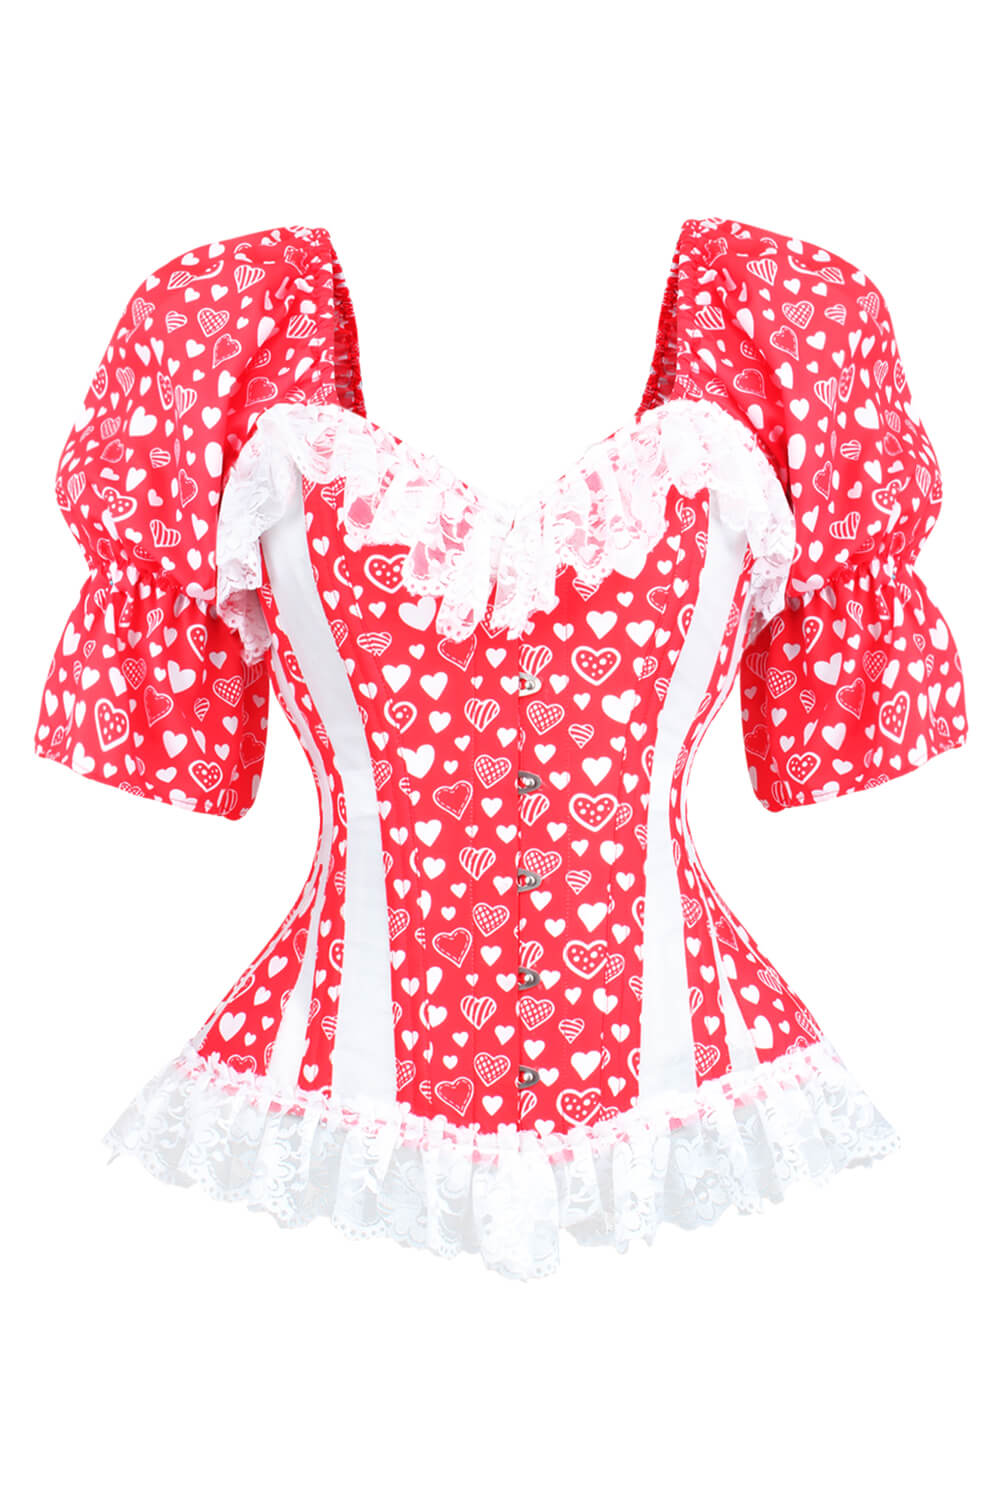 https://www.corsetdeal.co.uk/cdn/shop/products/EL-240_F_Red_Heart_Mesh_Overbust_Corset_ELC-301.jpg?v=1678792483